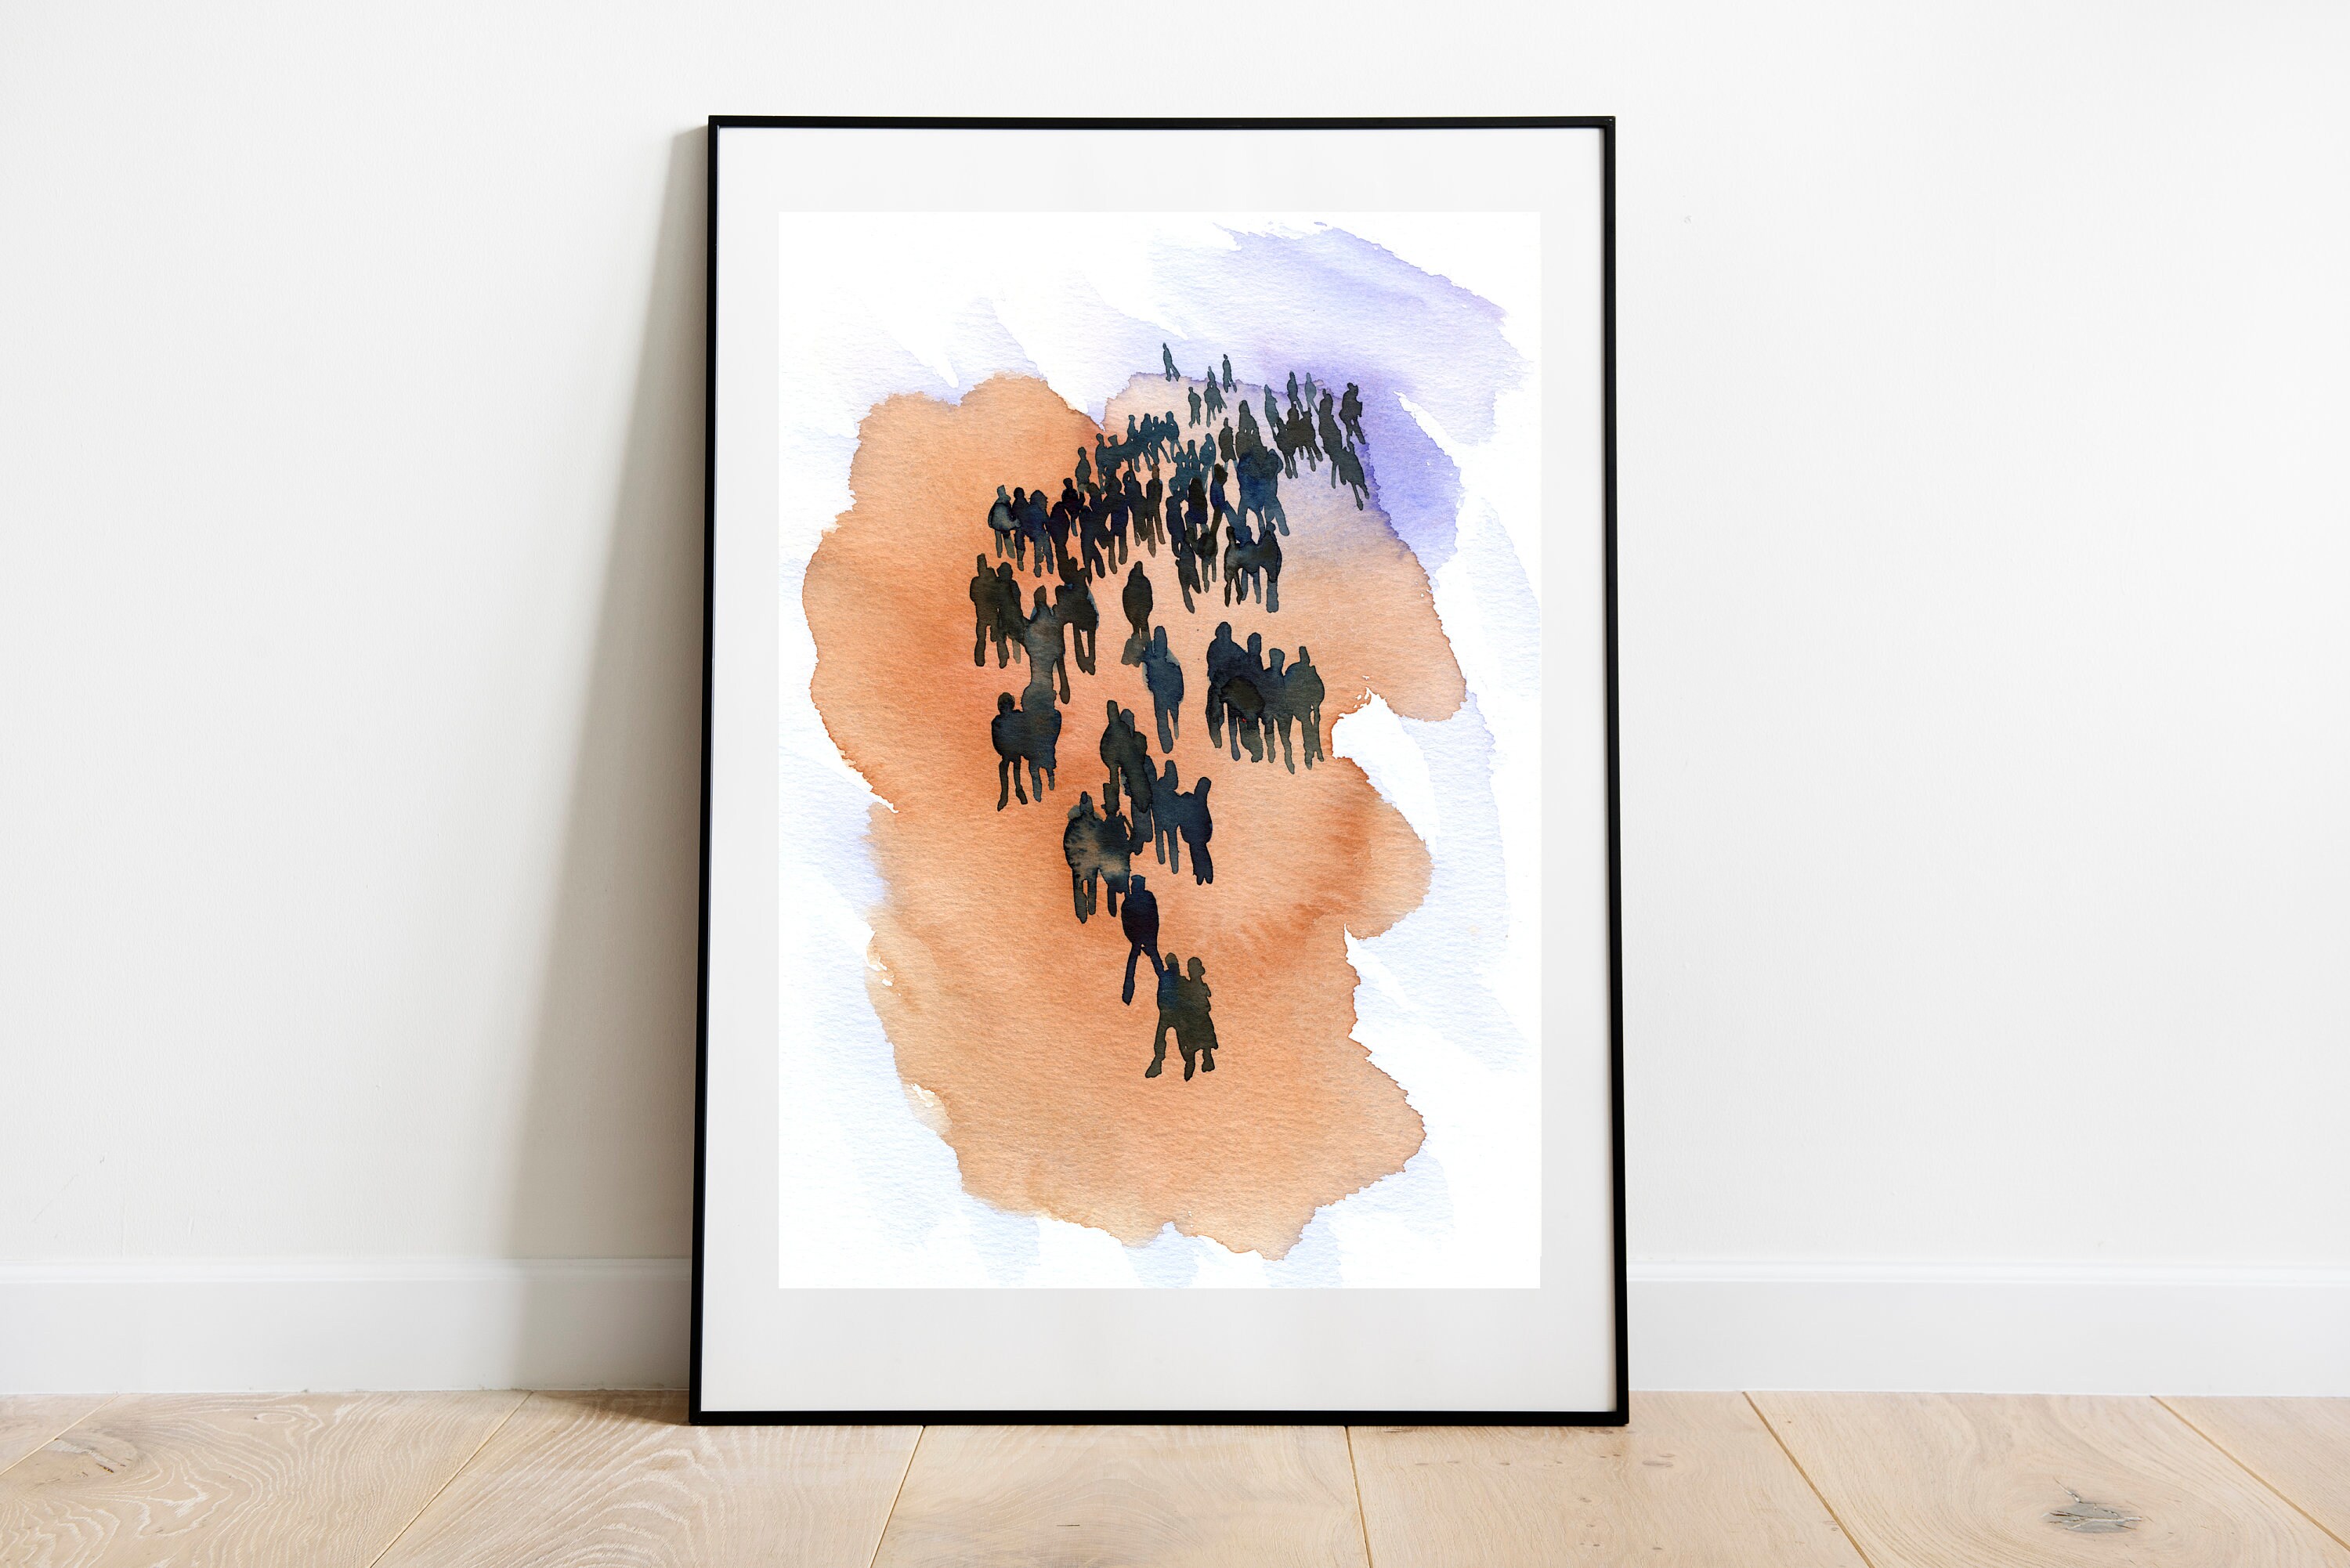 Fine Art Print Watercolor Painting Walking Crowd People | Etsy